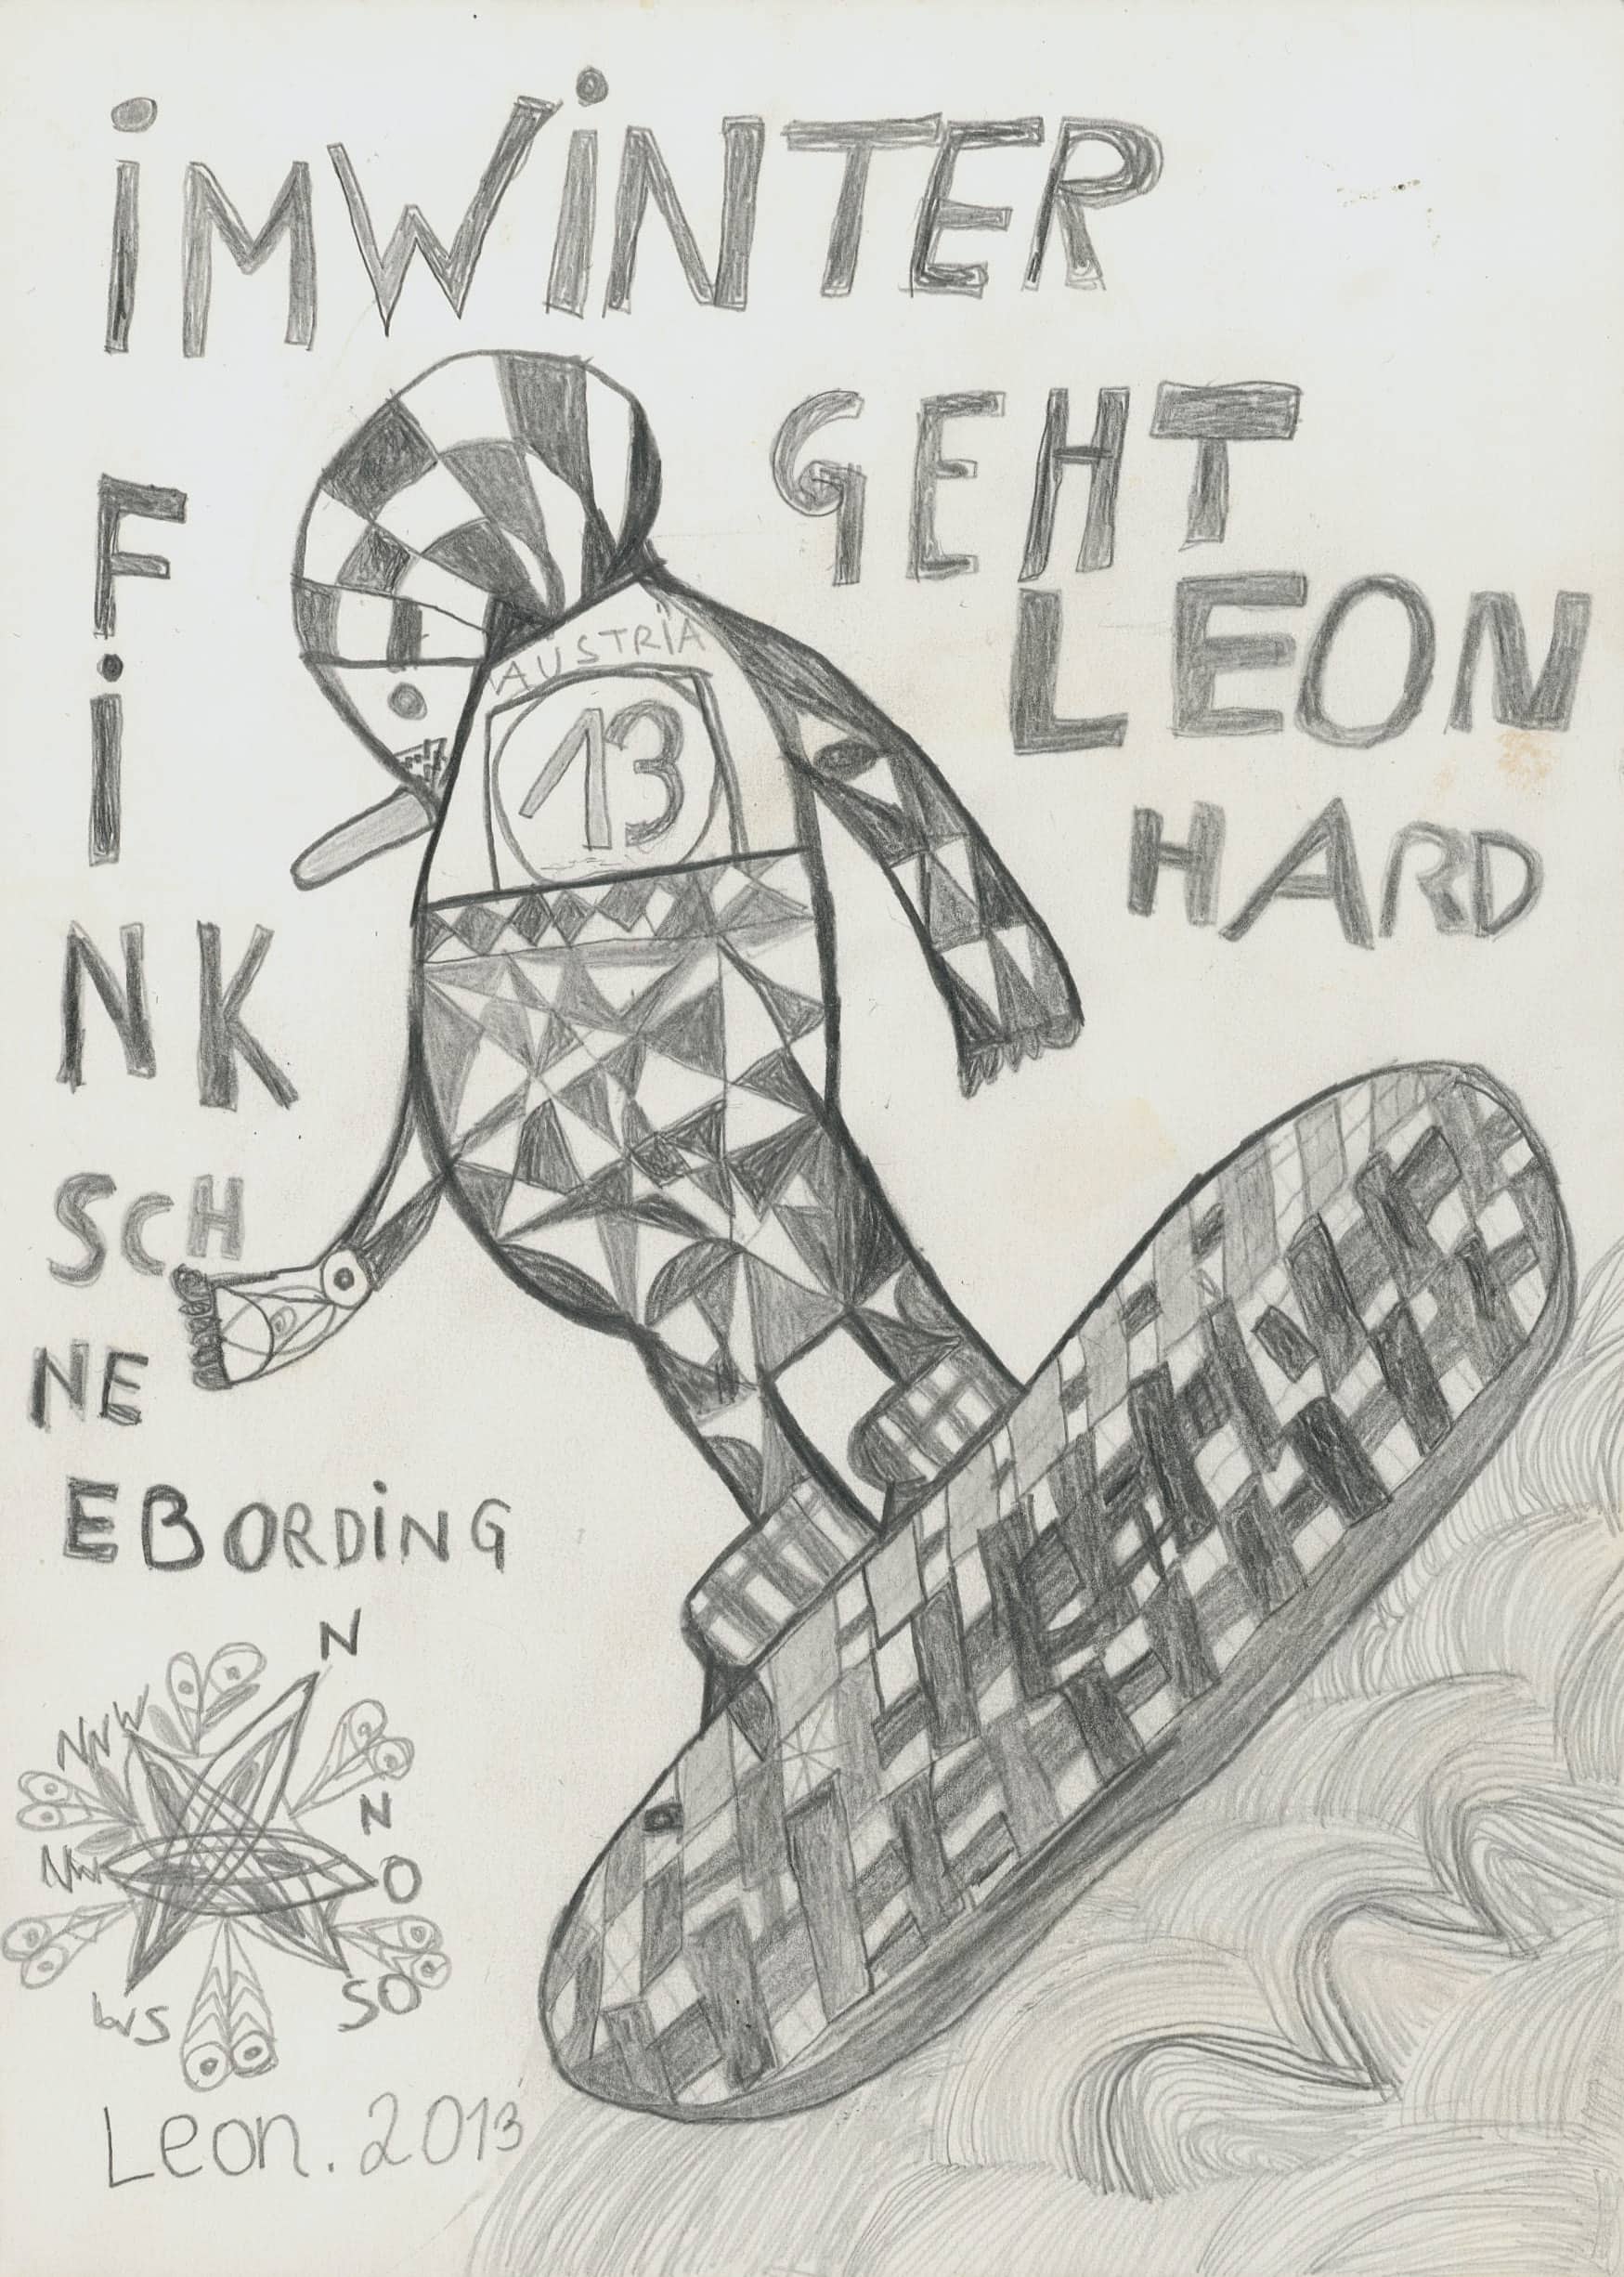 fink leonhard - Im Winter geht Leon Fink Hard Schneebording / In winter Leon Fink goes hard snowboarding